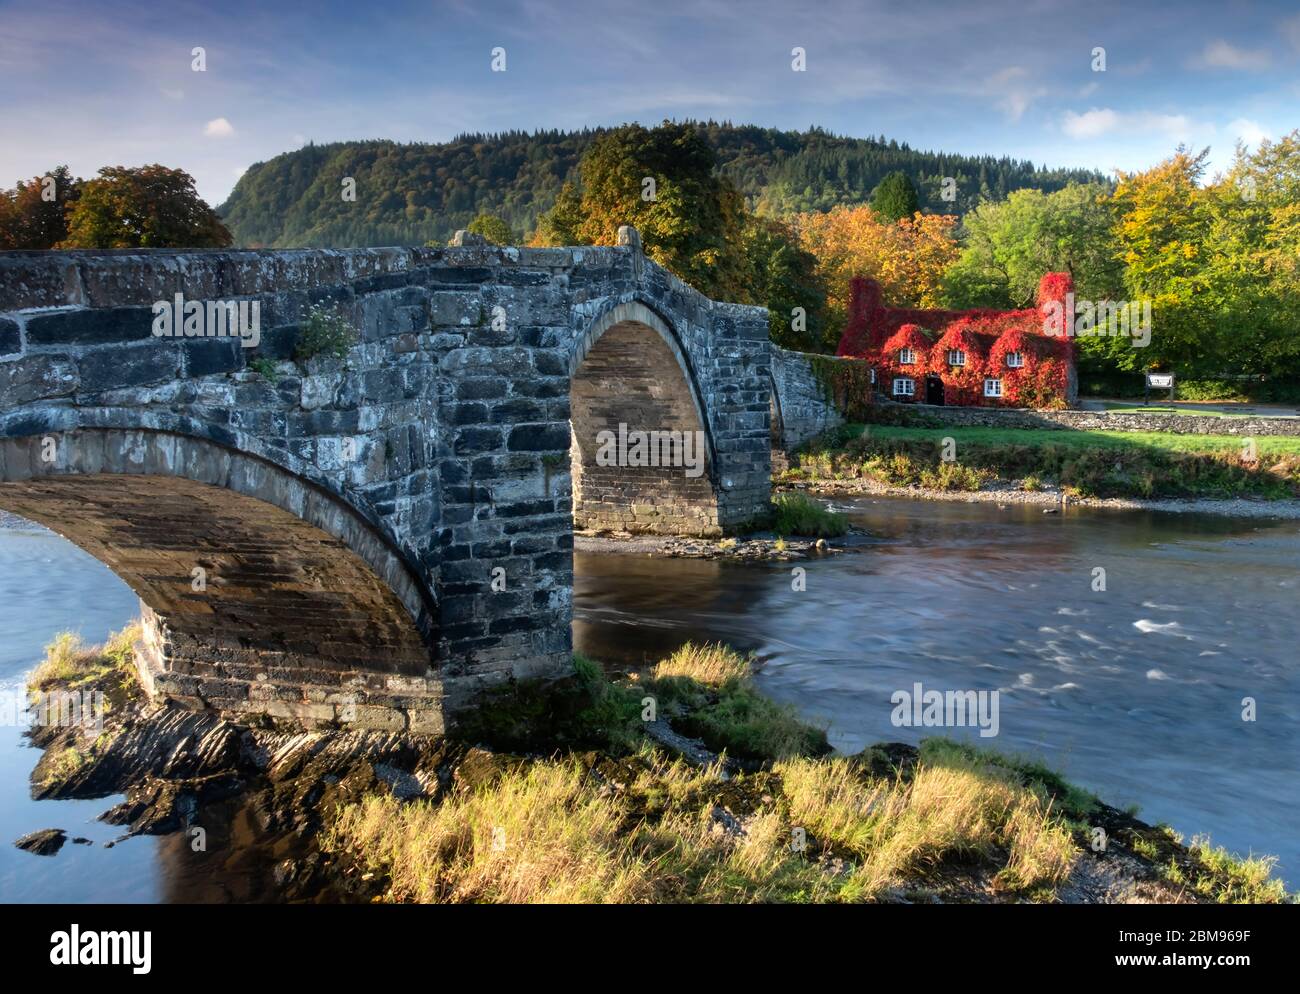 Pont Fawr, Tu Hwnt i’r Bont et The River Conwy, Llanrwst, Conwyshire, parc national de Snowdonia, Nord du pays de Galles, Royaume-Uni. Banque D'Images